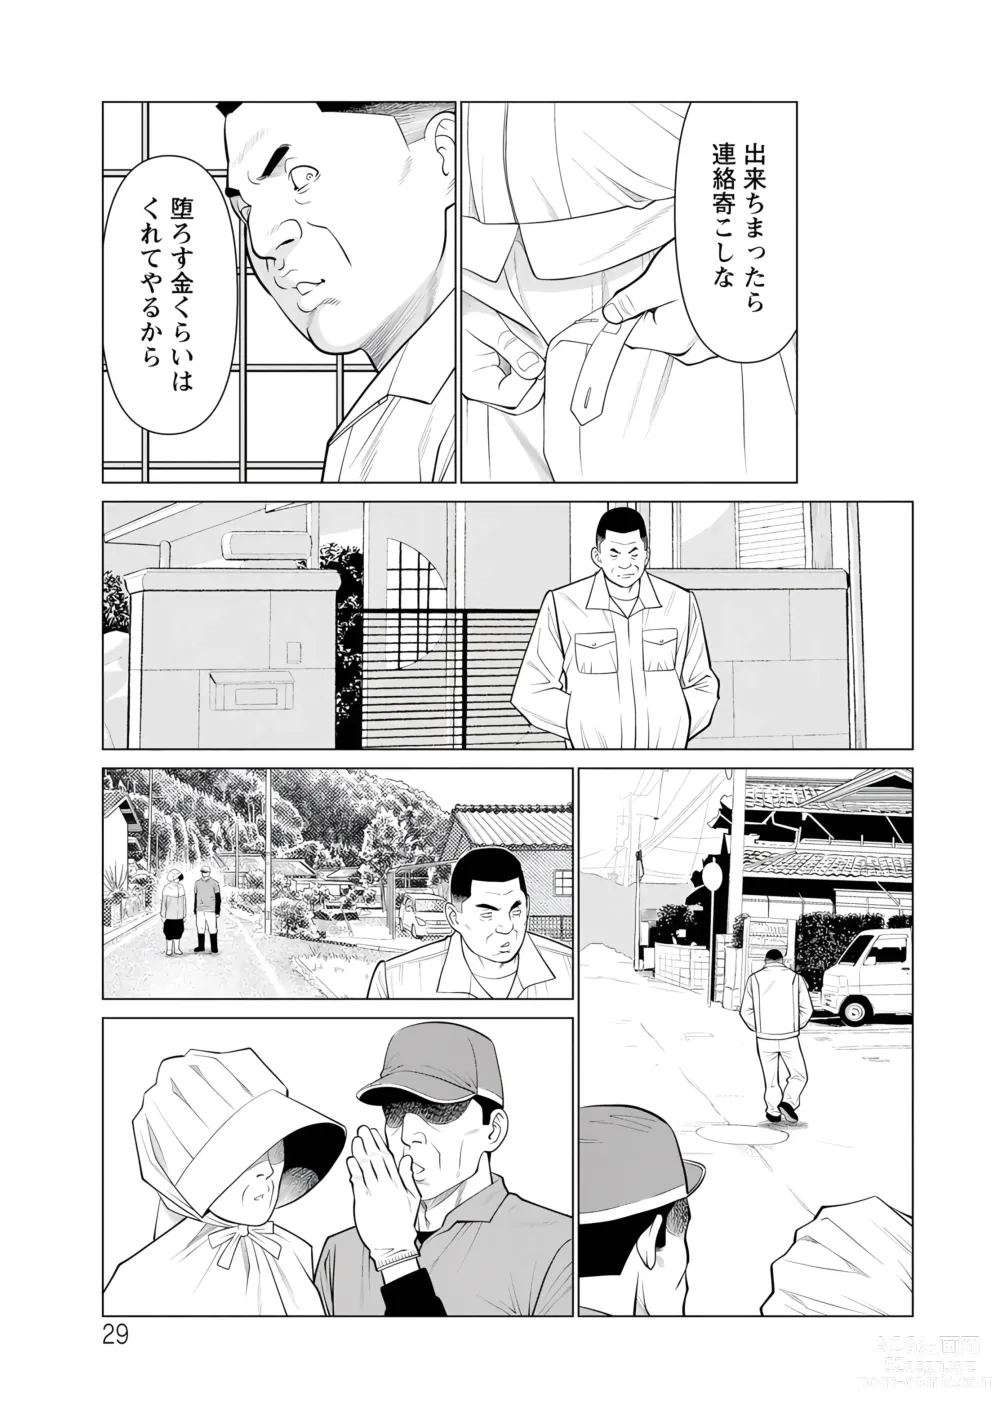 Page 29 of manga Rengoku no Sono - The Garden of Purgatory 2